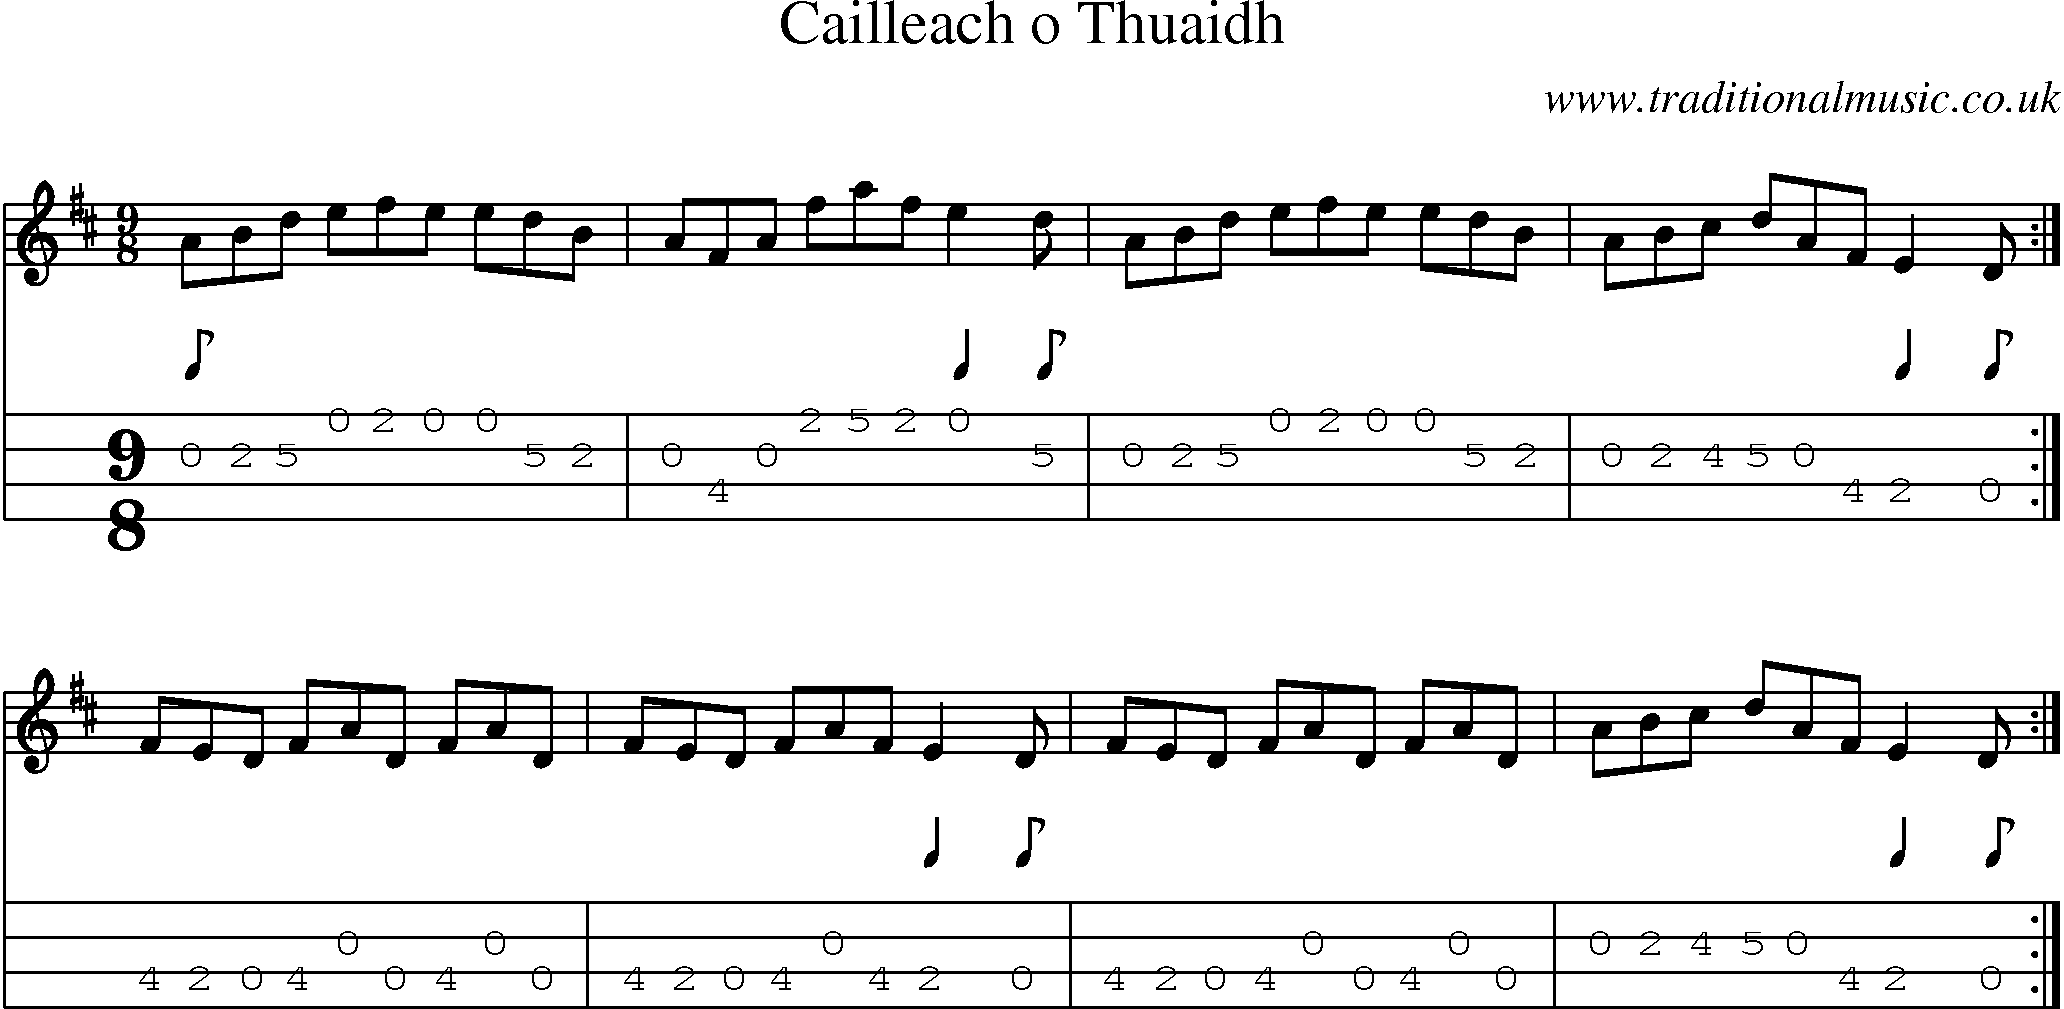 Music Score and Mandolin Tabs for Cailleach O Thuaidh